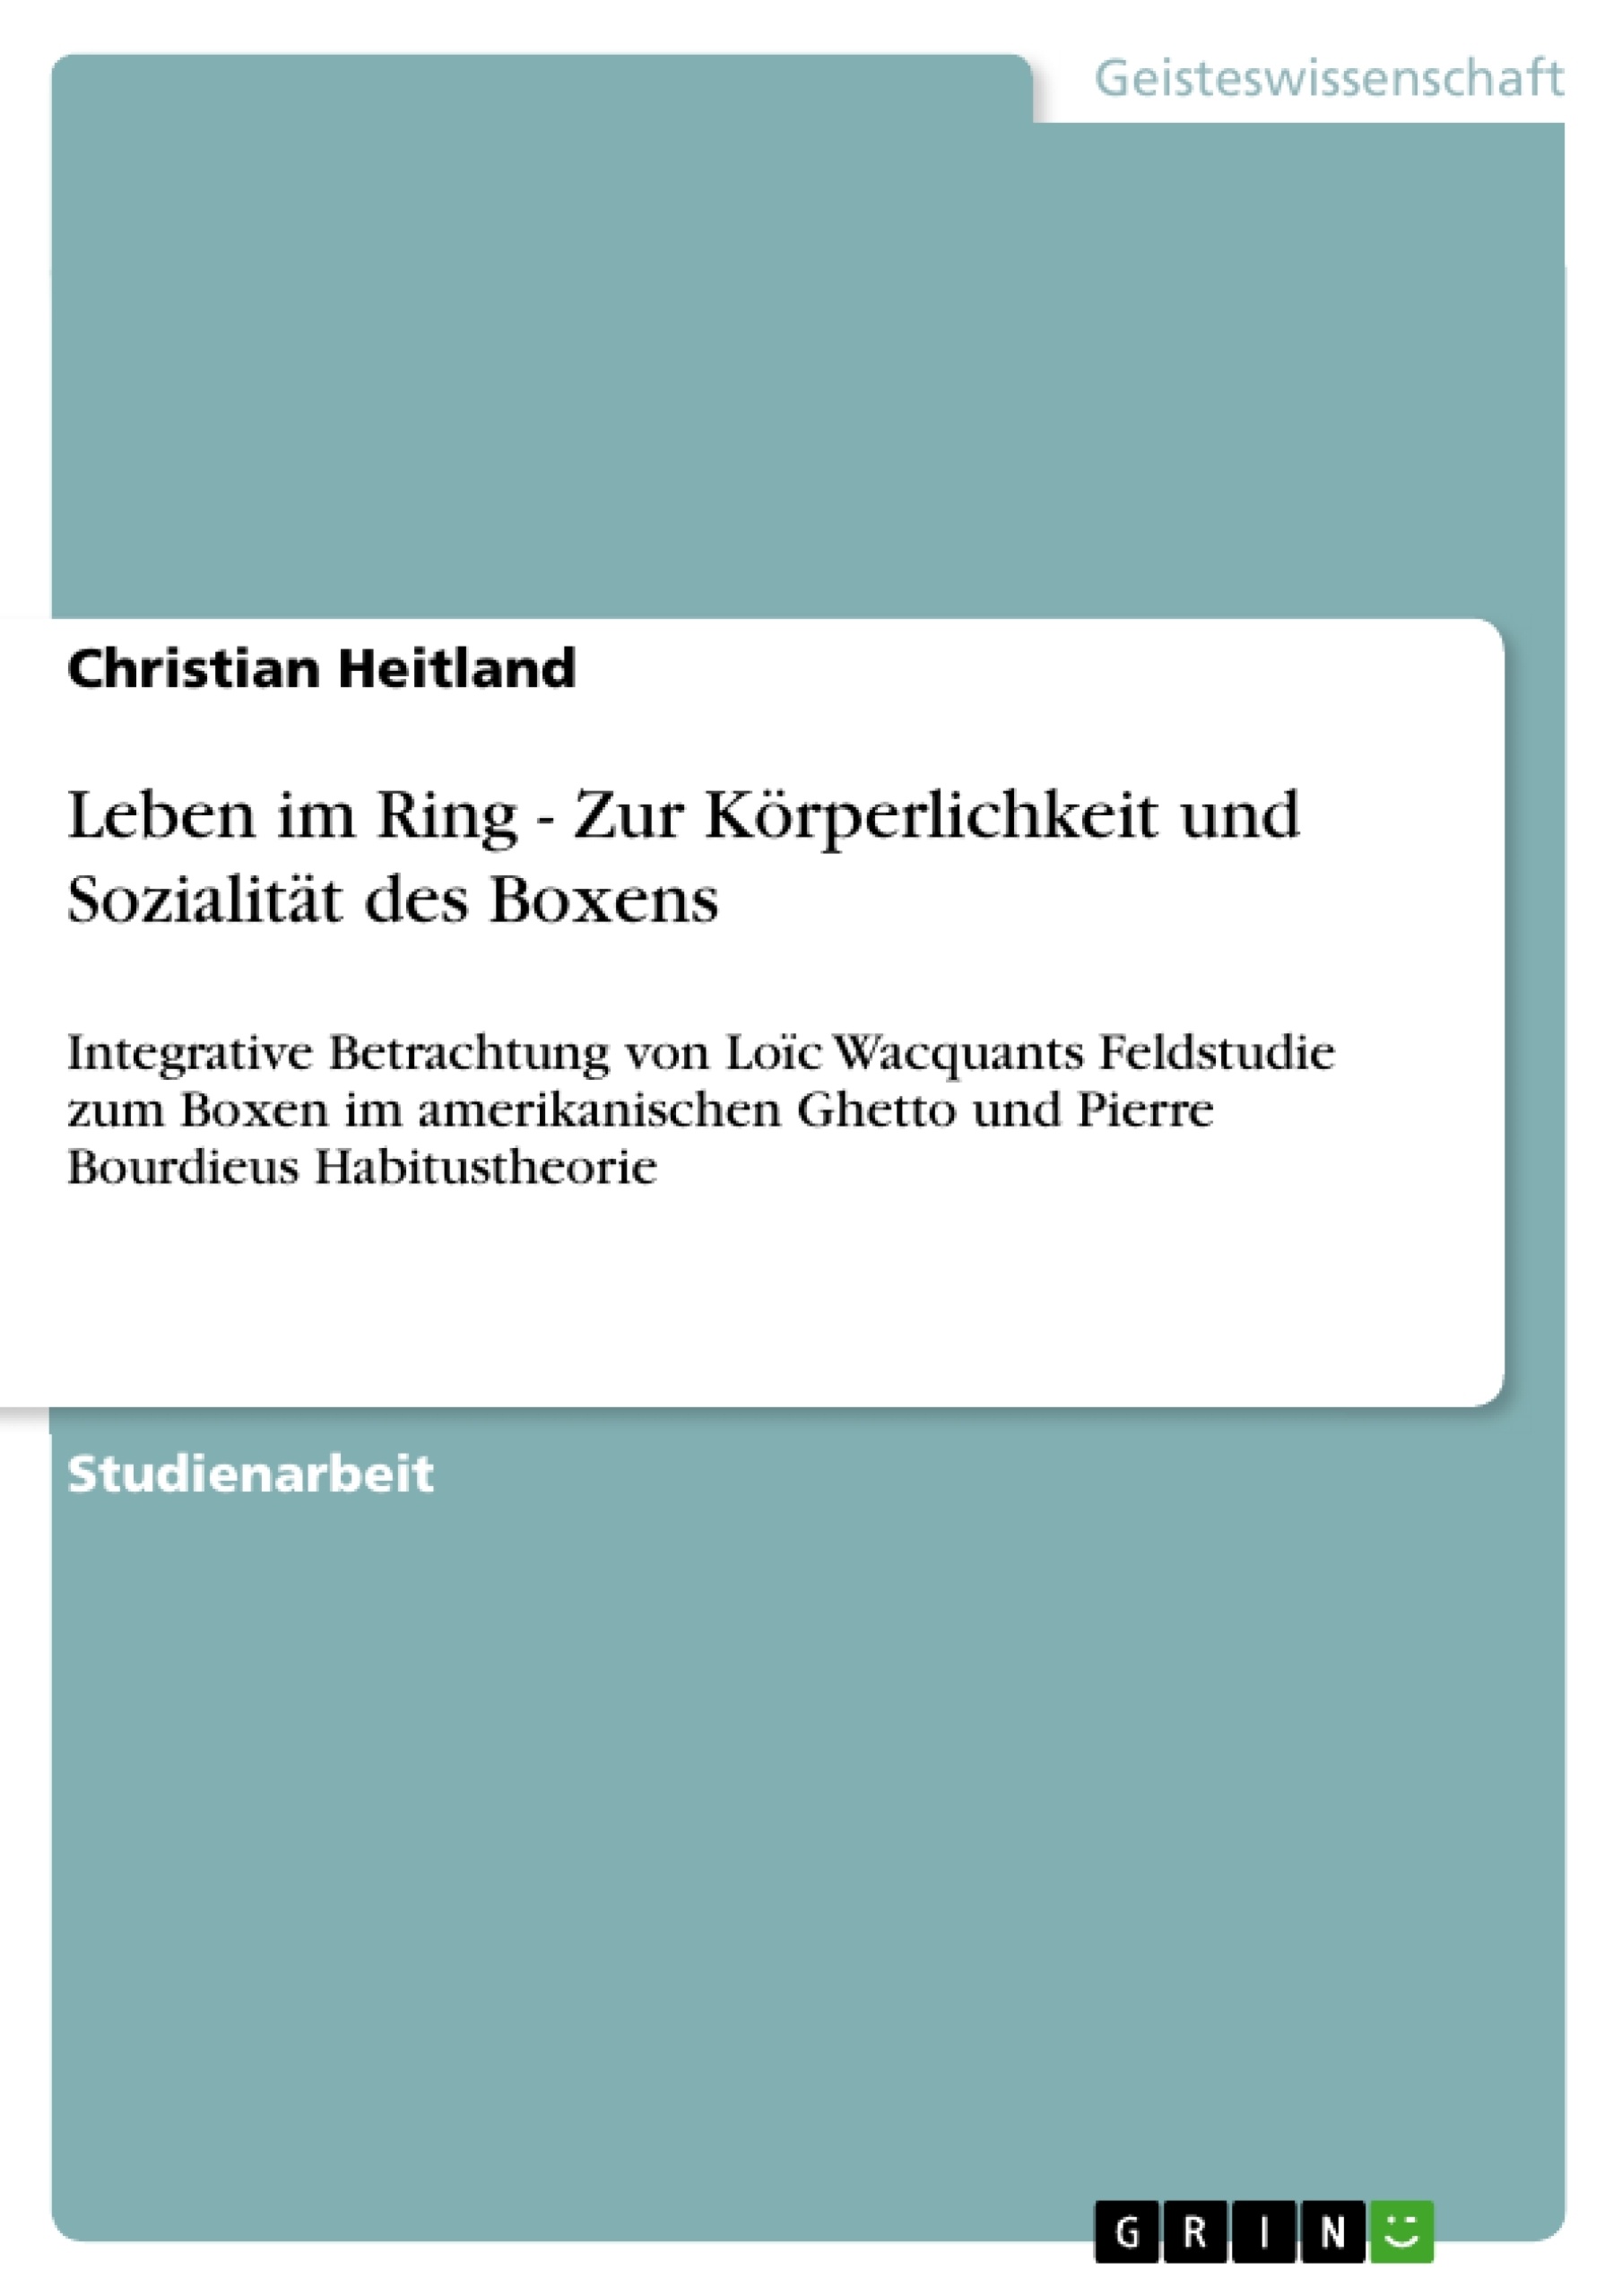 Titre: Leben im Ring - Zur Körperlichkeit und Sozialität des Boxens